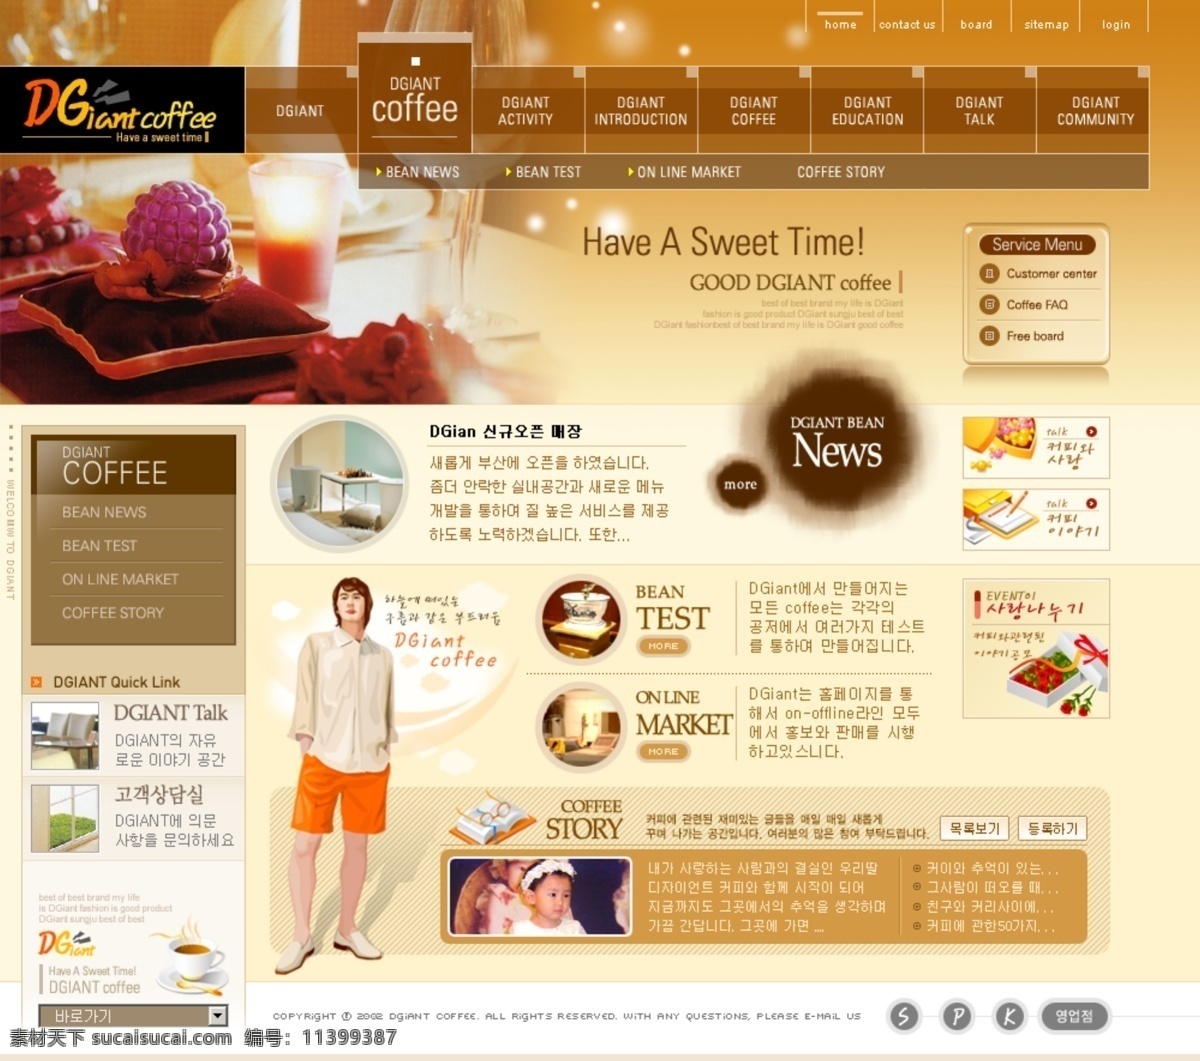 网页模板 38 psd模板 韩国模板 设计素材 经典网页 网页素材 白色